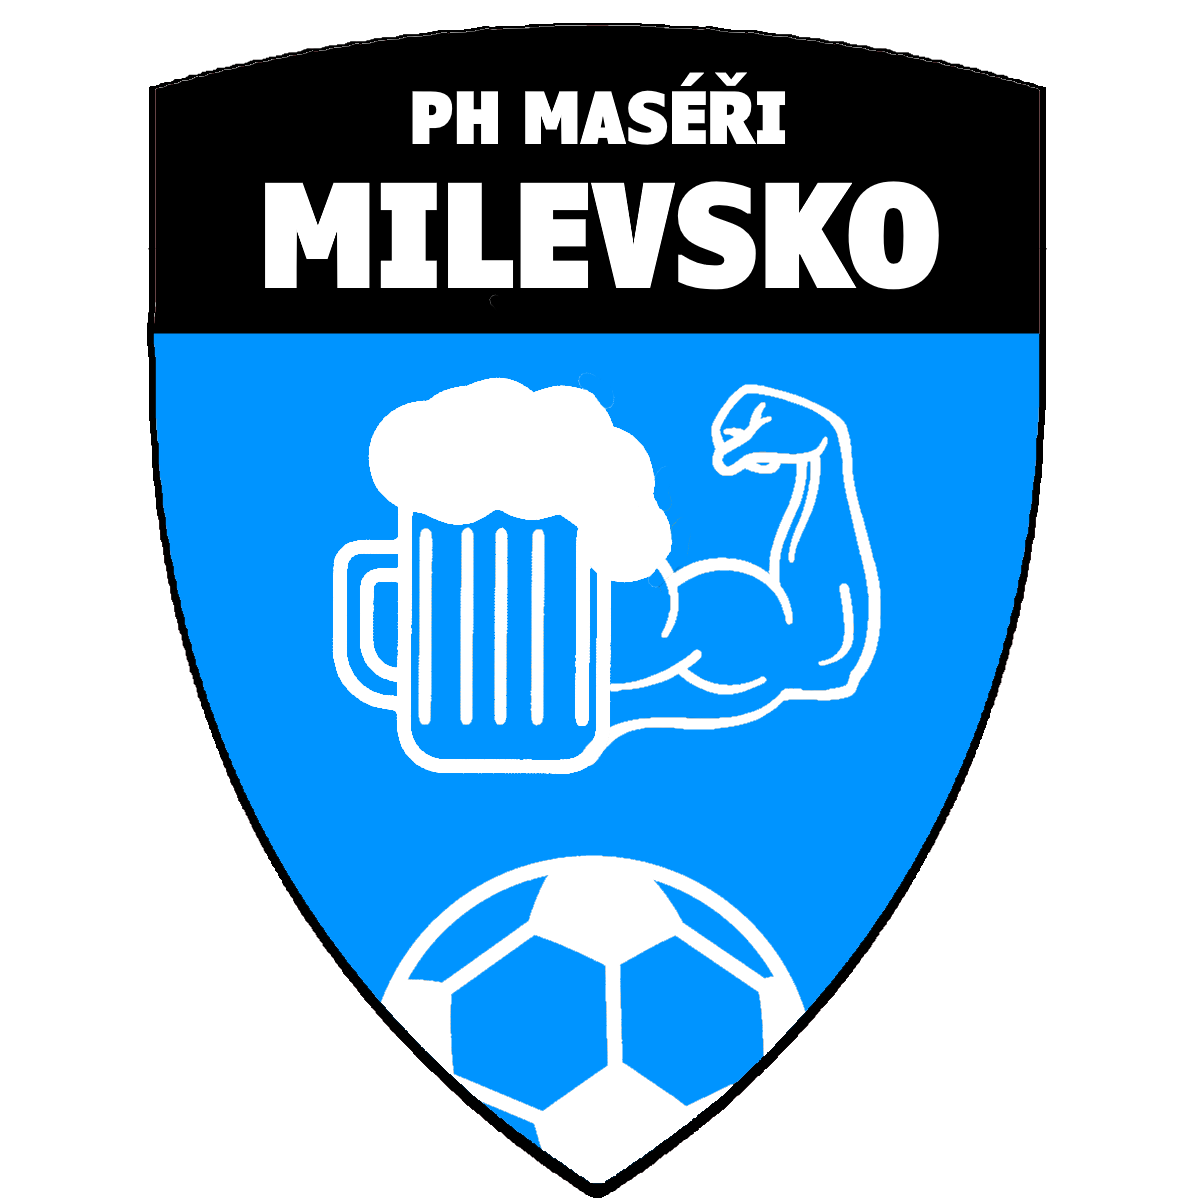 PH Masi Milevsko